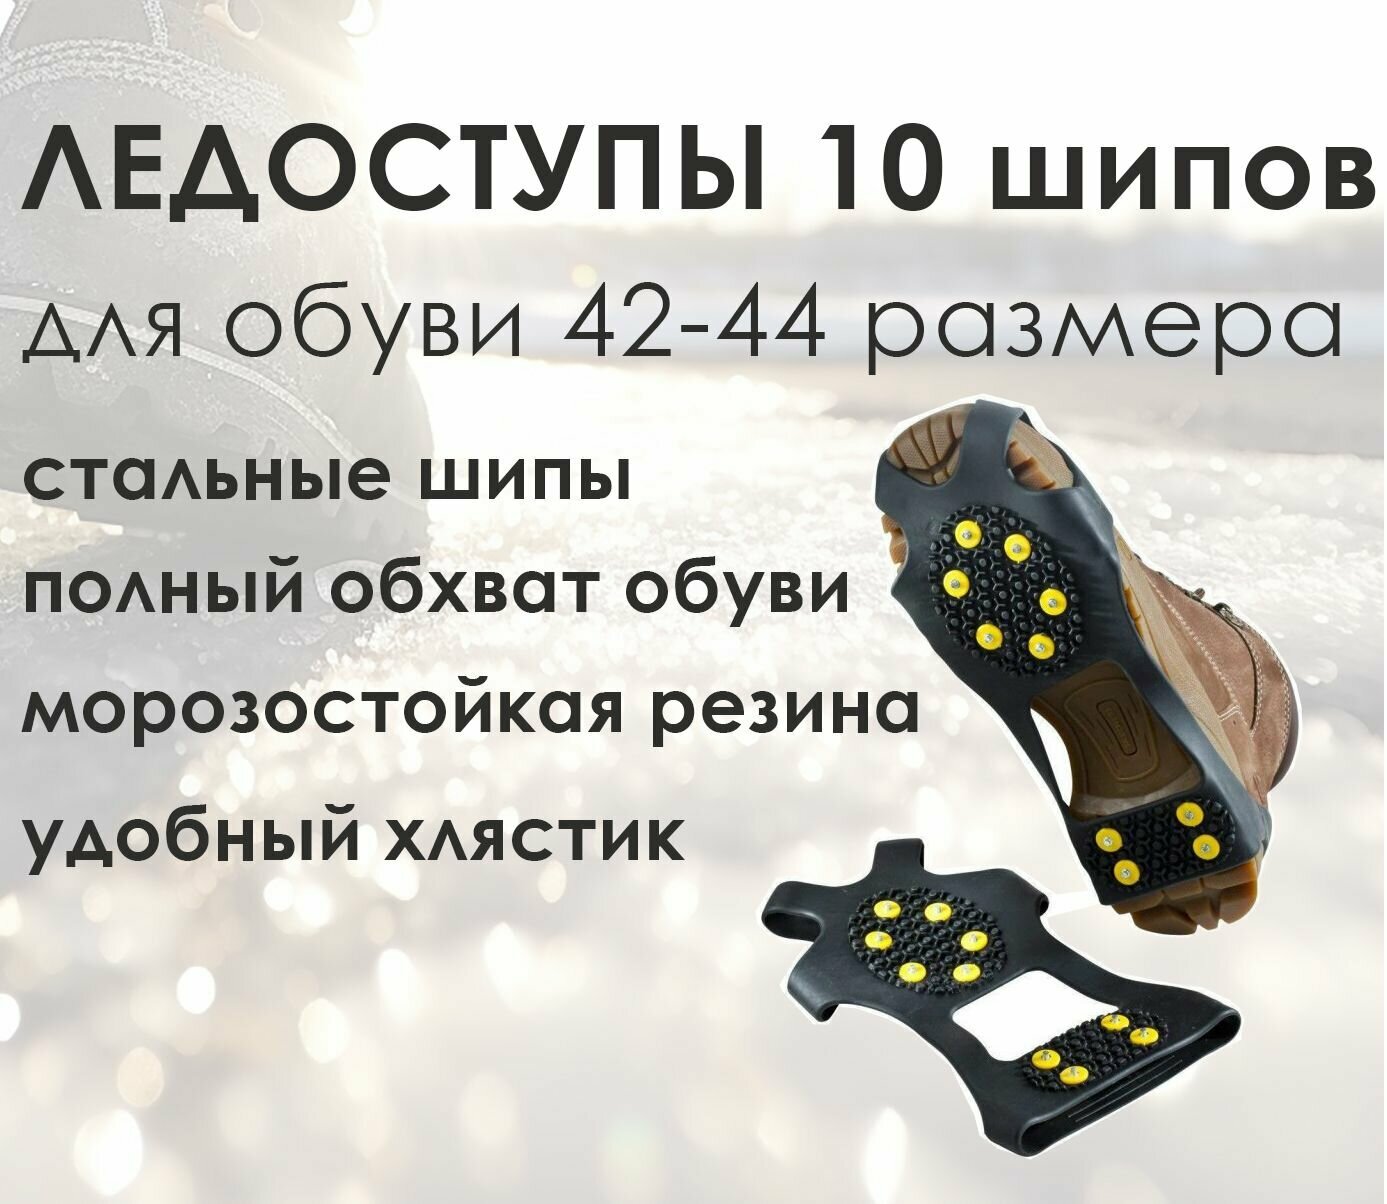 Ледоходы на обувь 10 шипов XL (42-44) / Ледоступы на обувь 10 шипов XL (42-44) / ледоходы на обувь резиновые